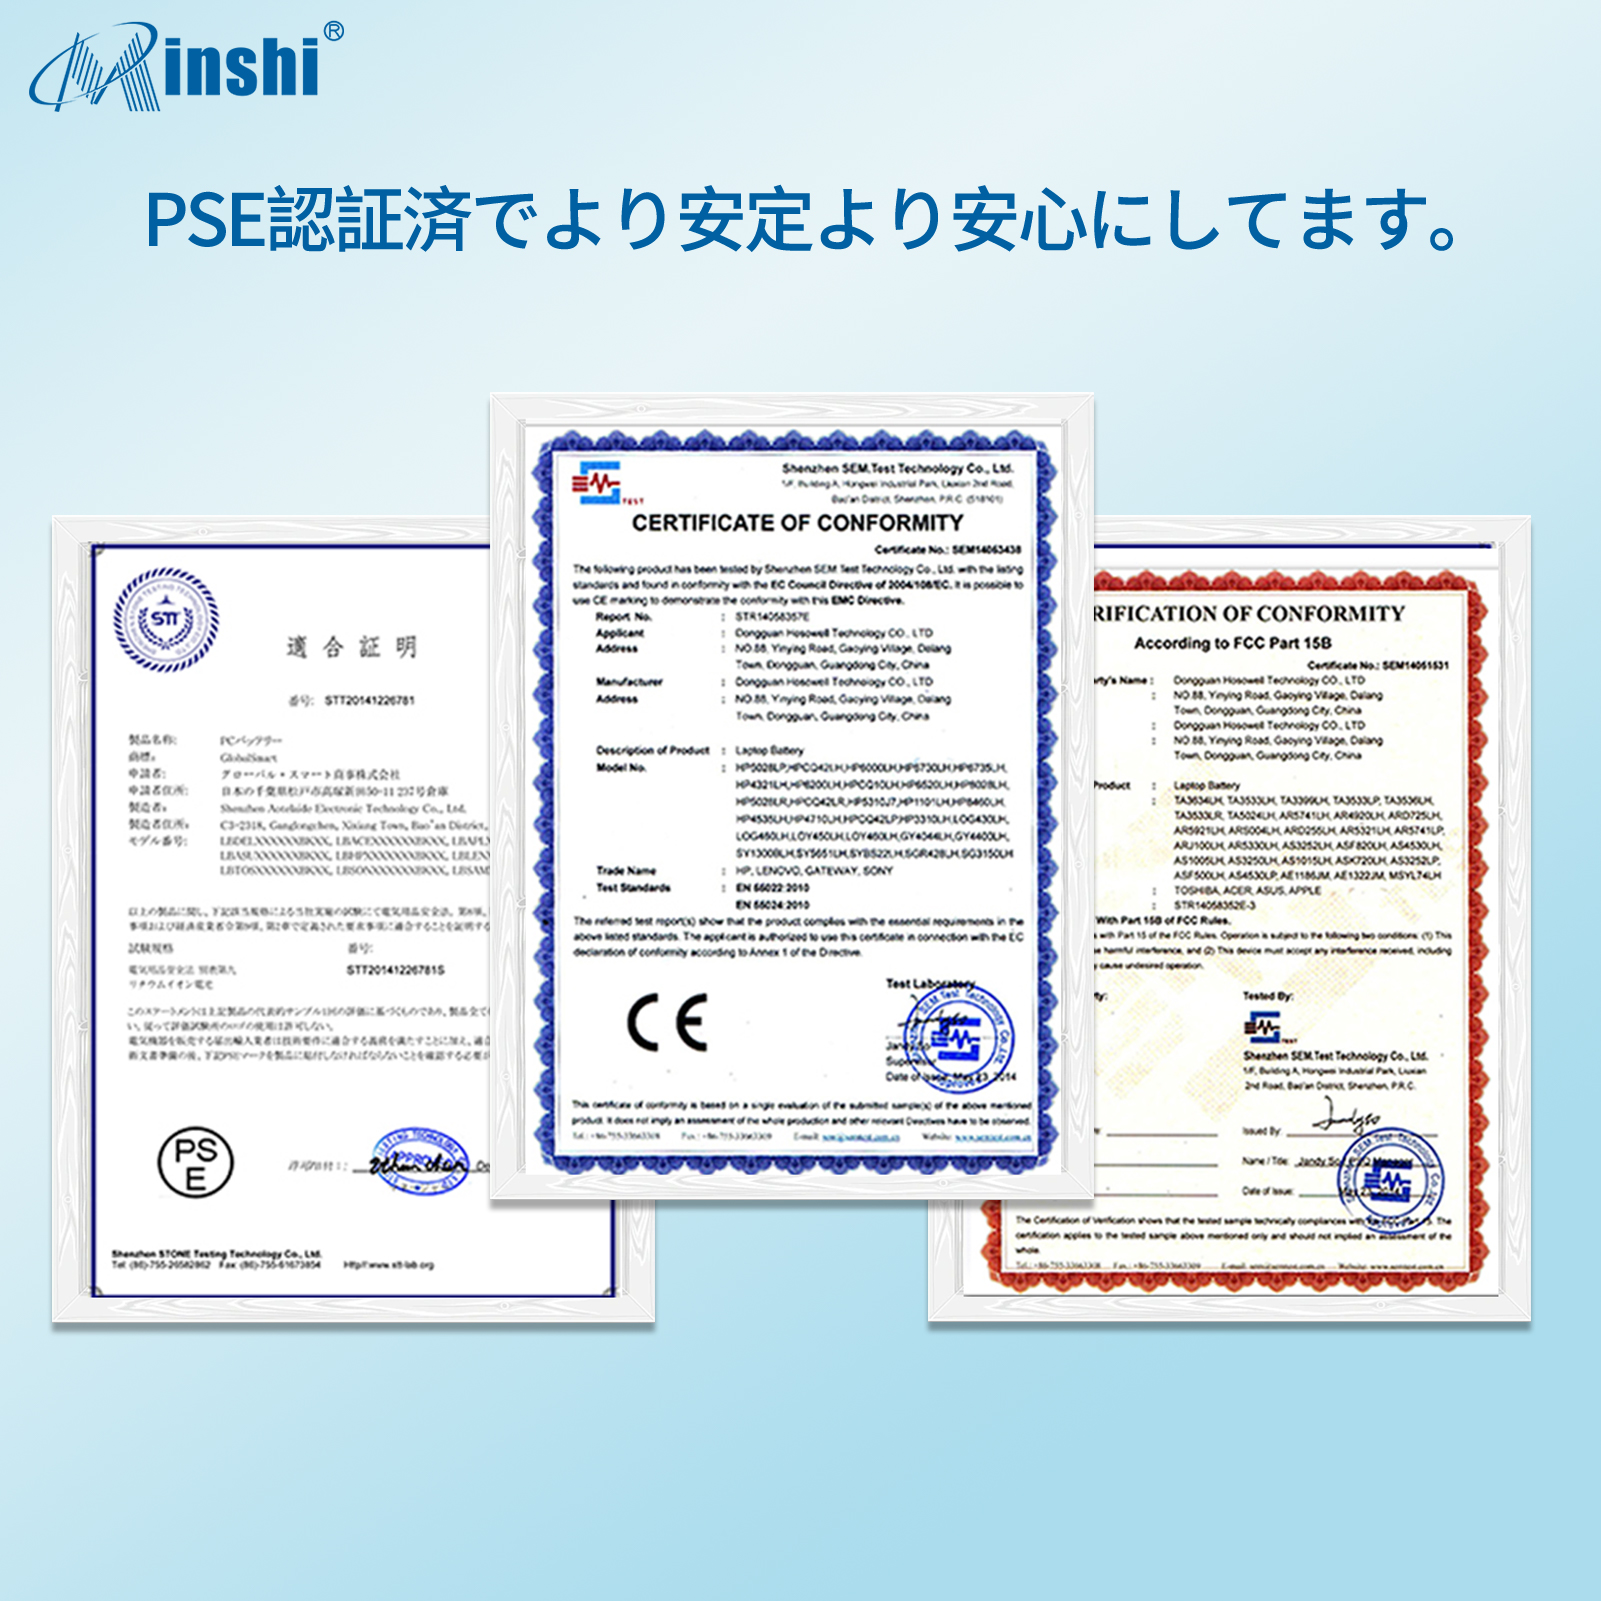  minshi DELL 0KM742 対応 5200mAh PSE認定済 高品質互換バッテリーWHC